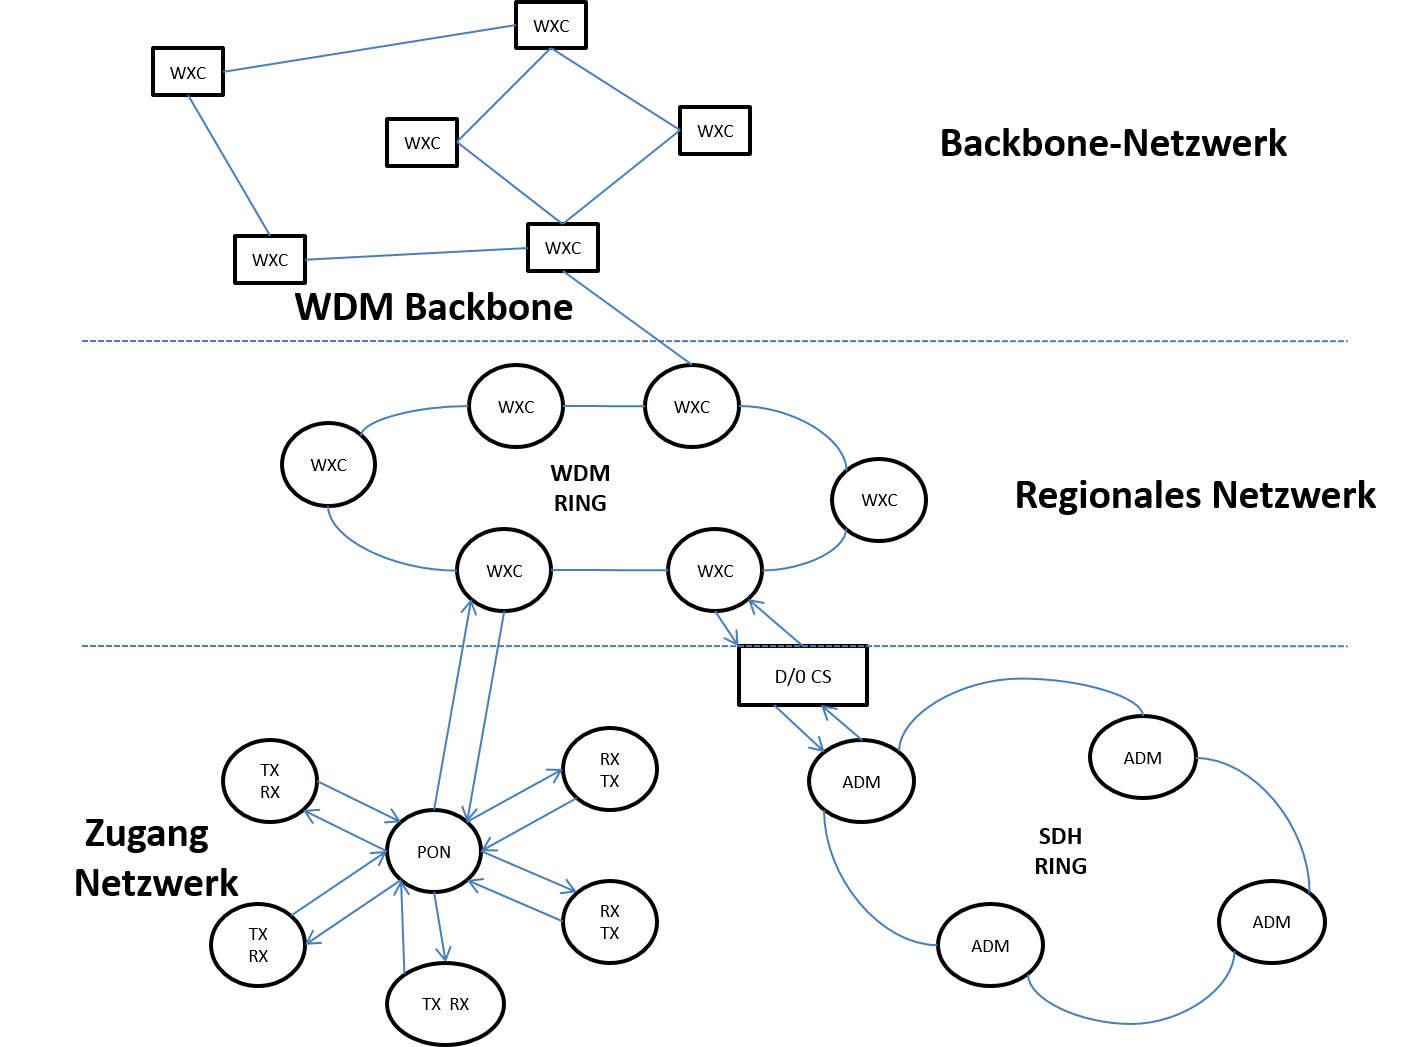 Backbone-Netzwerk